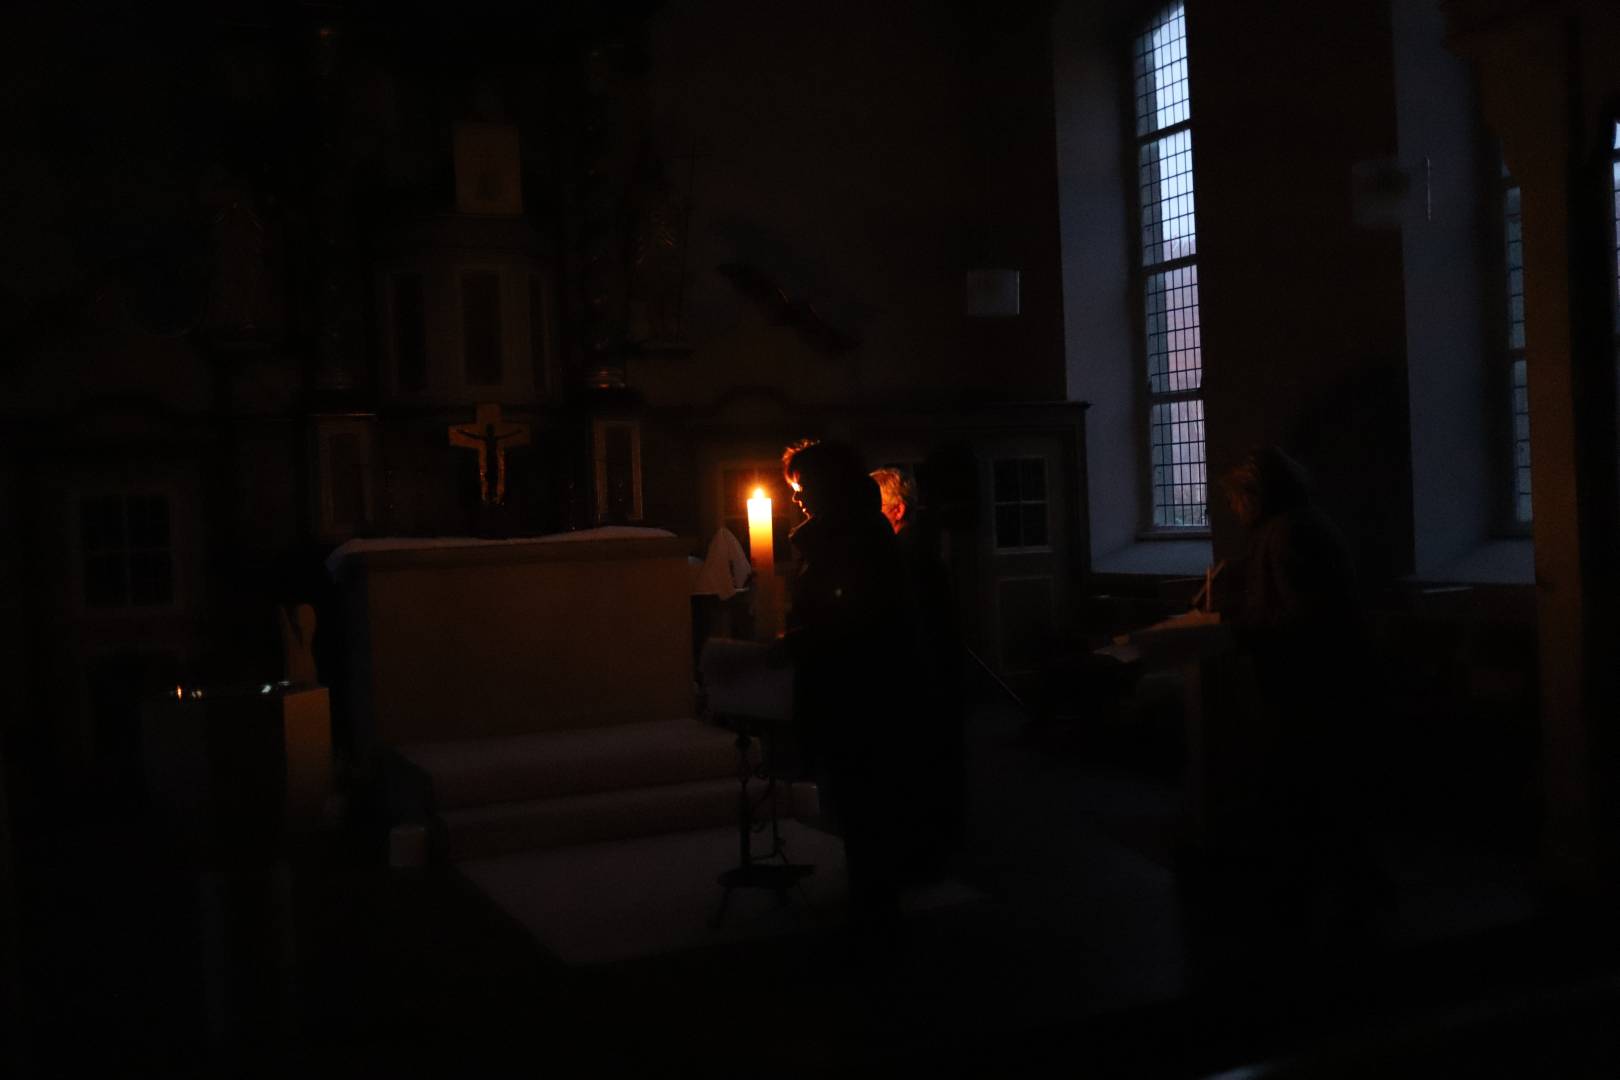 Osternachtgottesdienst in der Katharinenkirche